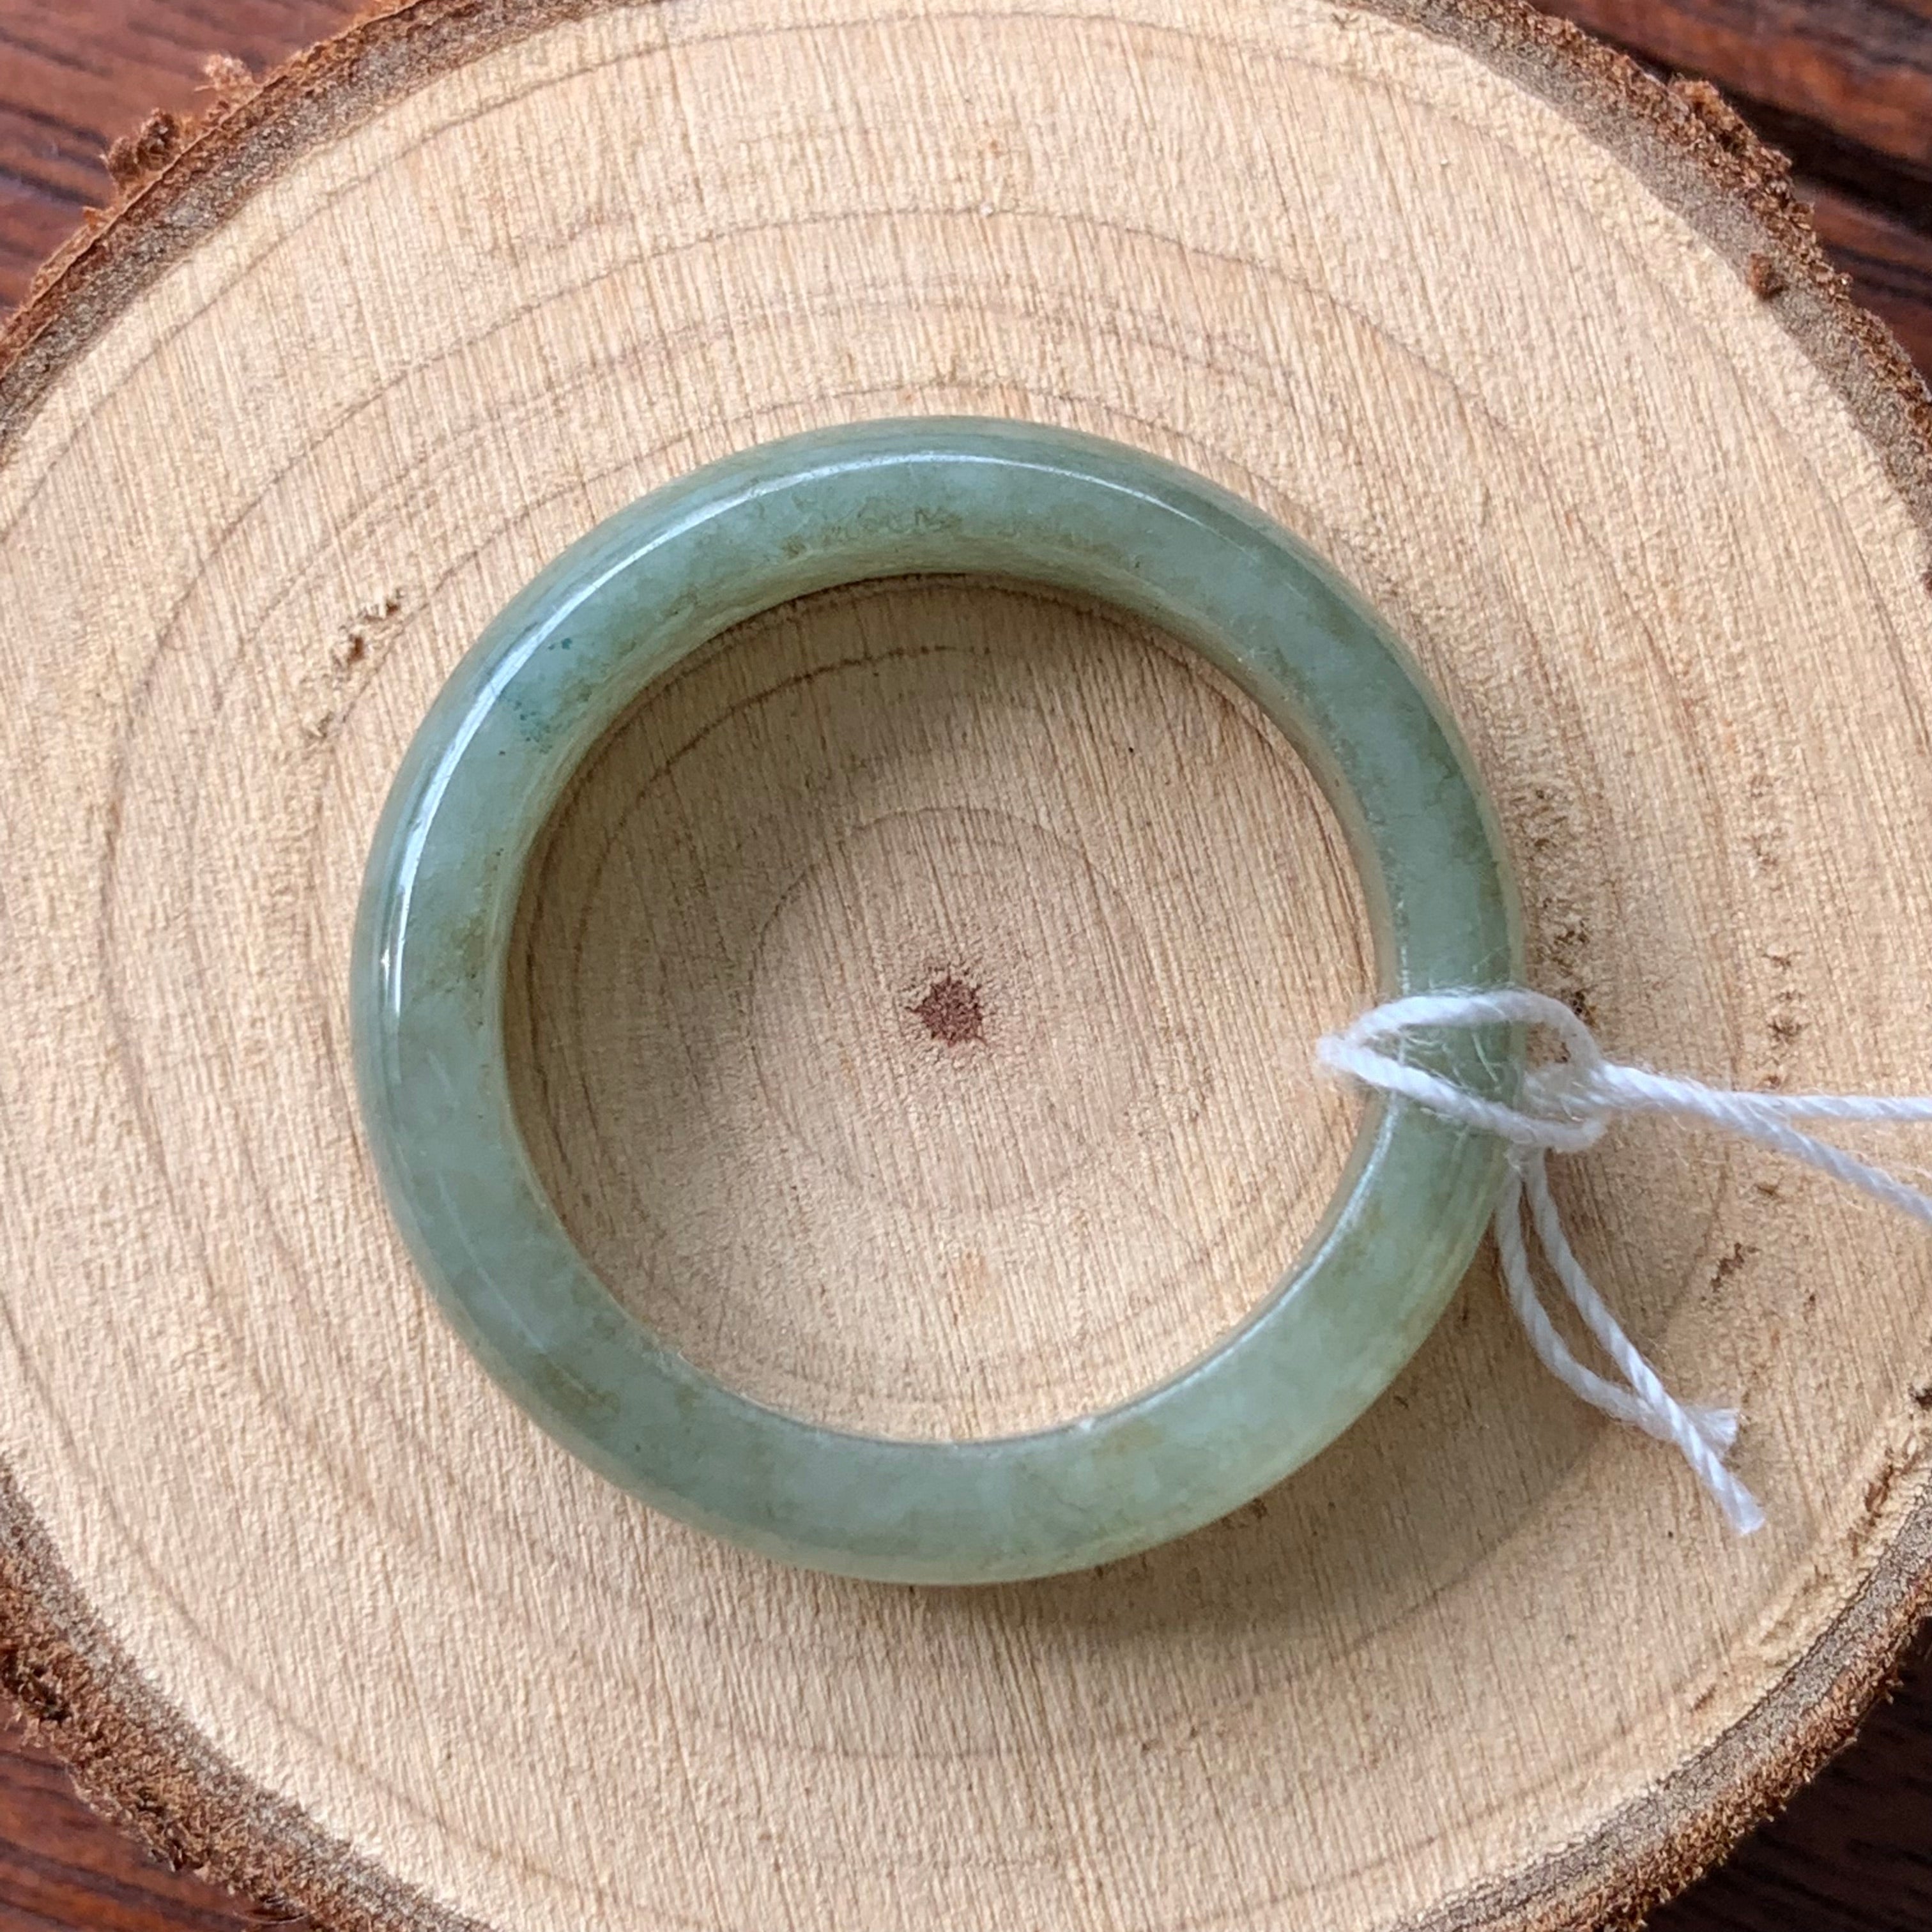 Burmese Natural Jade Rings (Large)  JR-0222